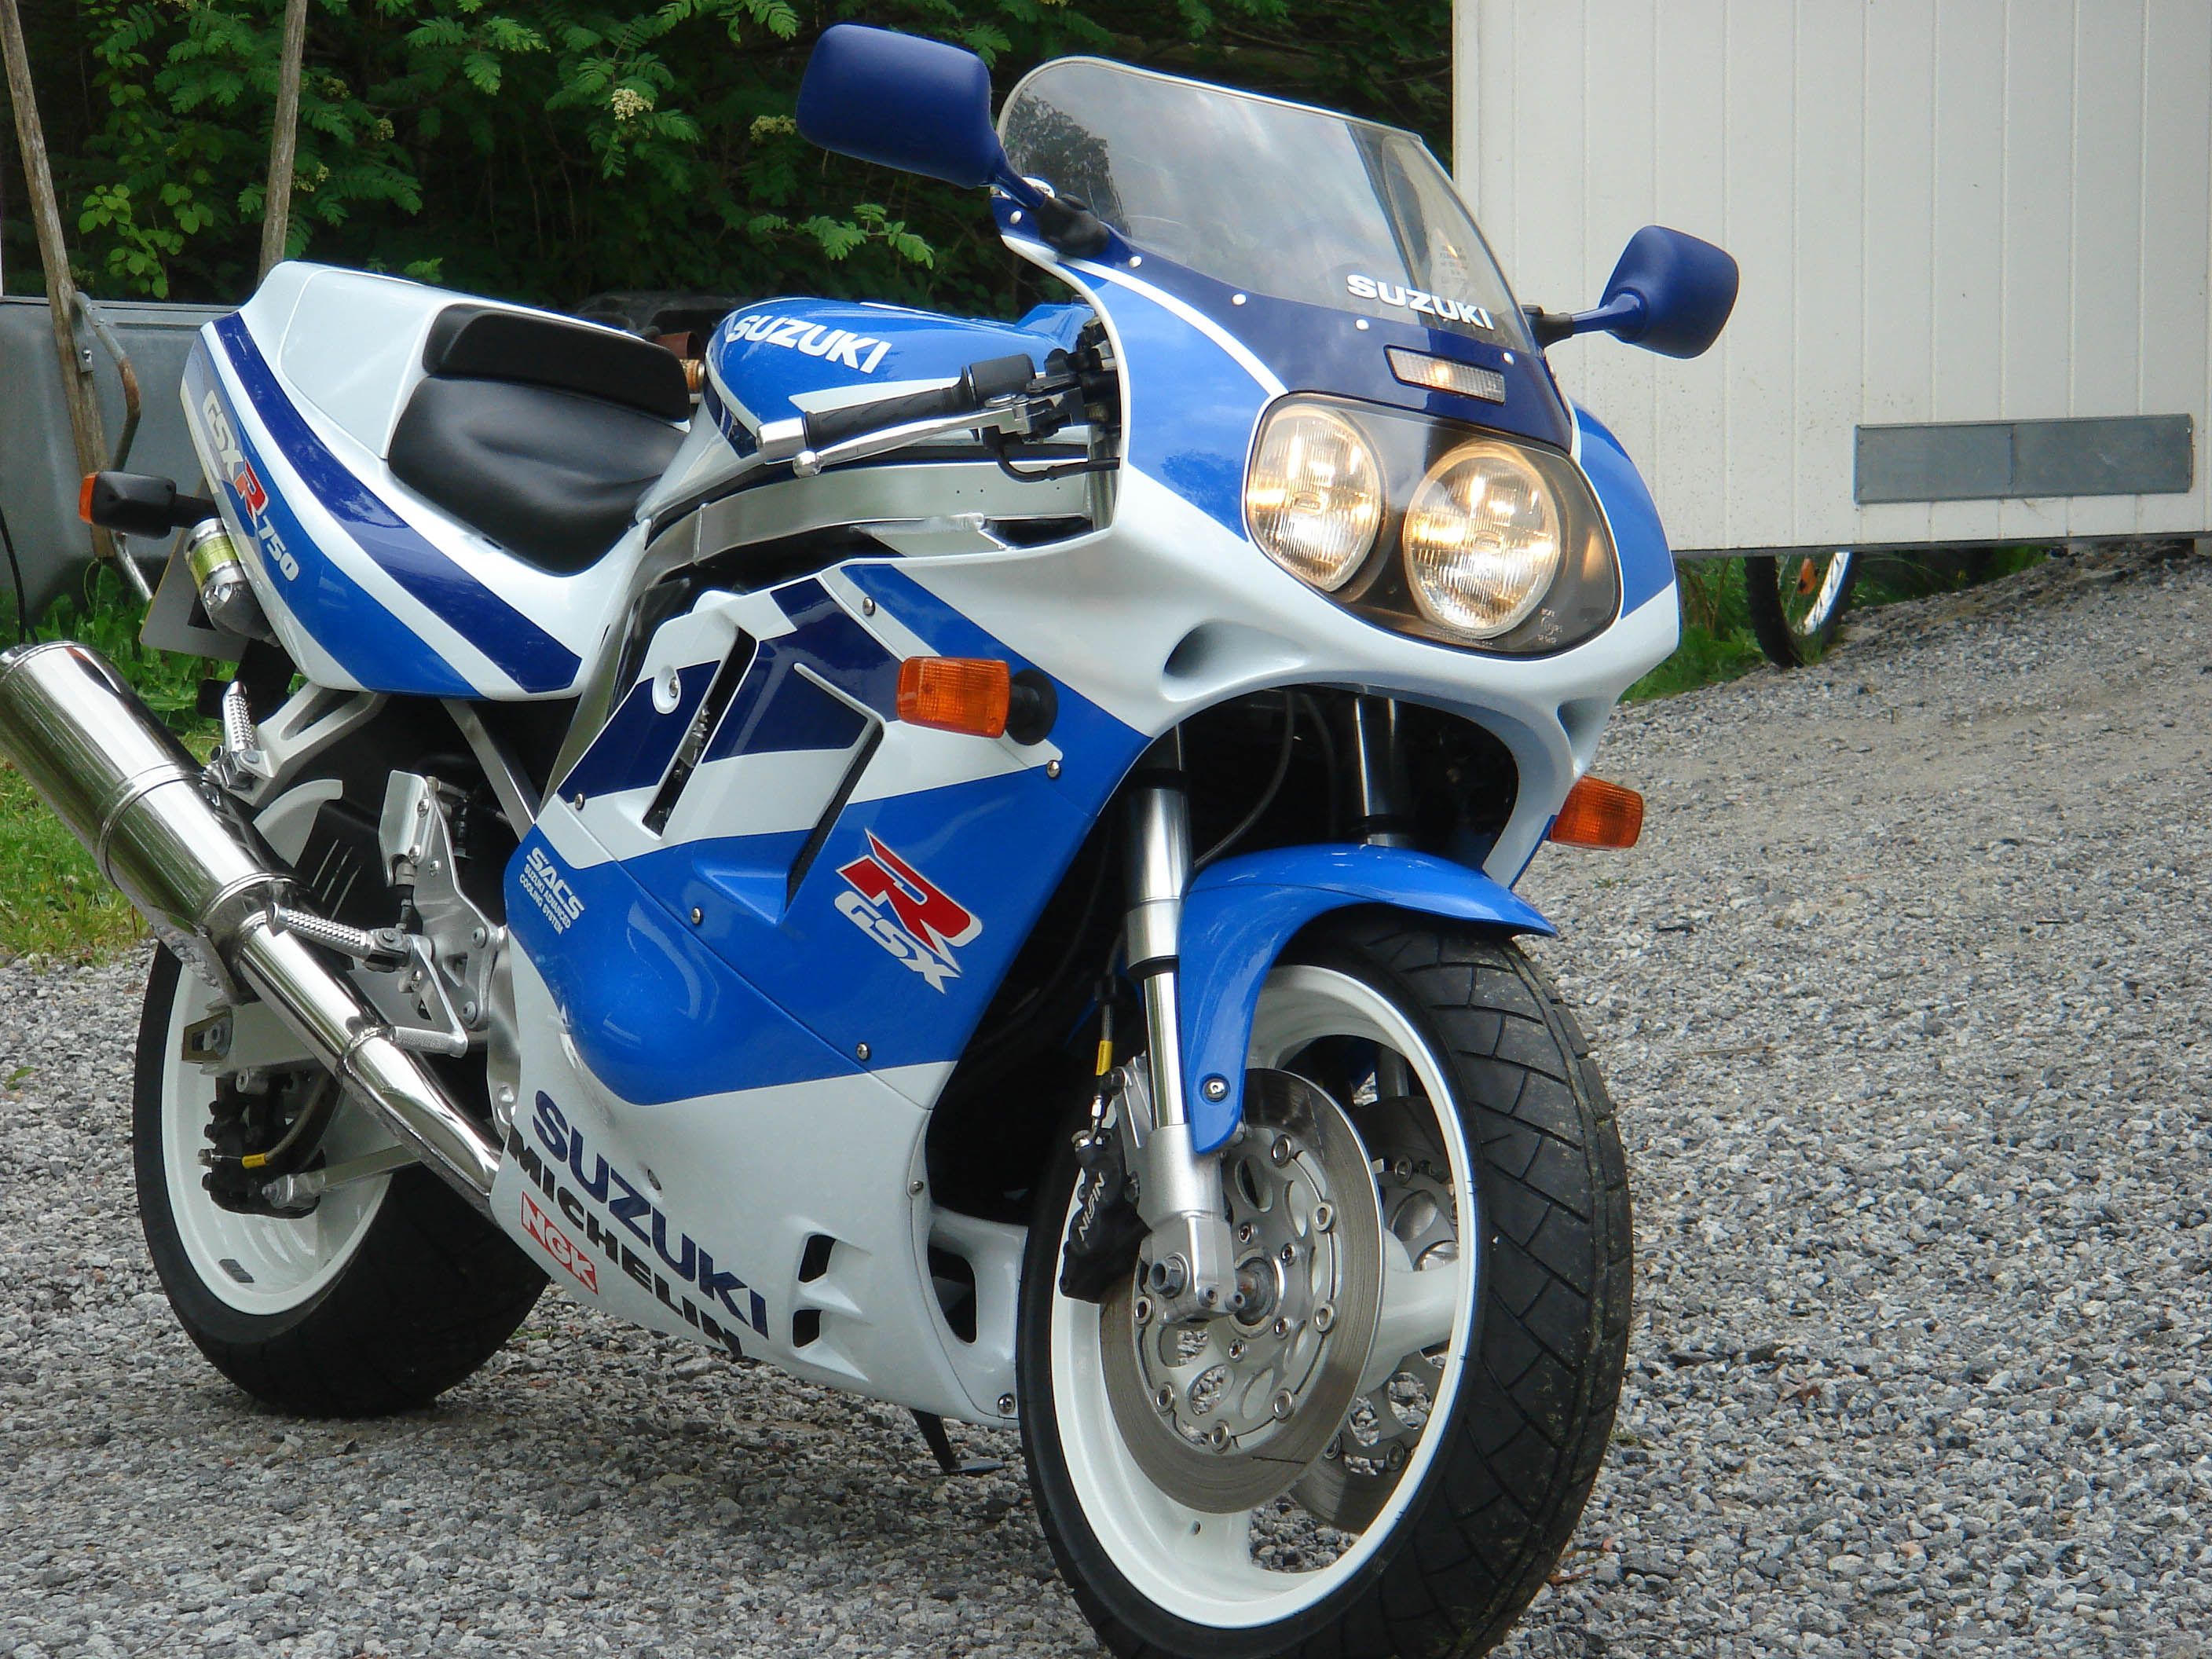 Blue and white Suzuki GSX-R750WP